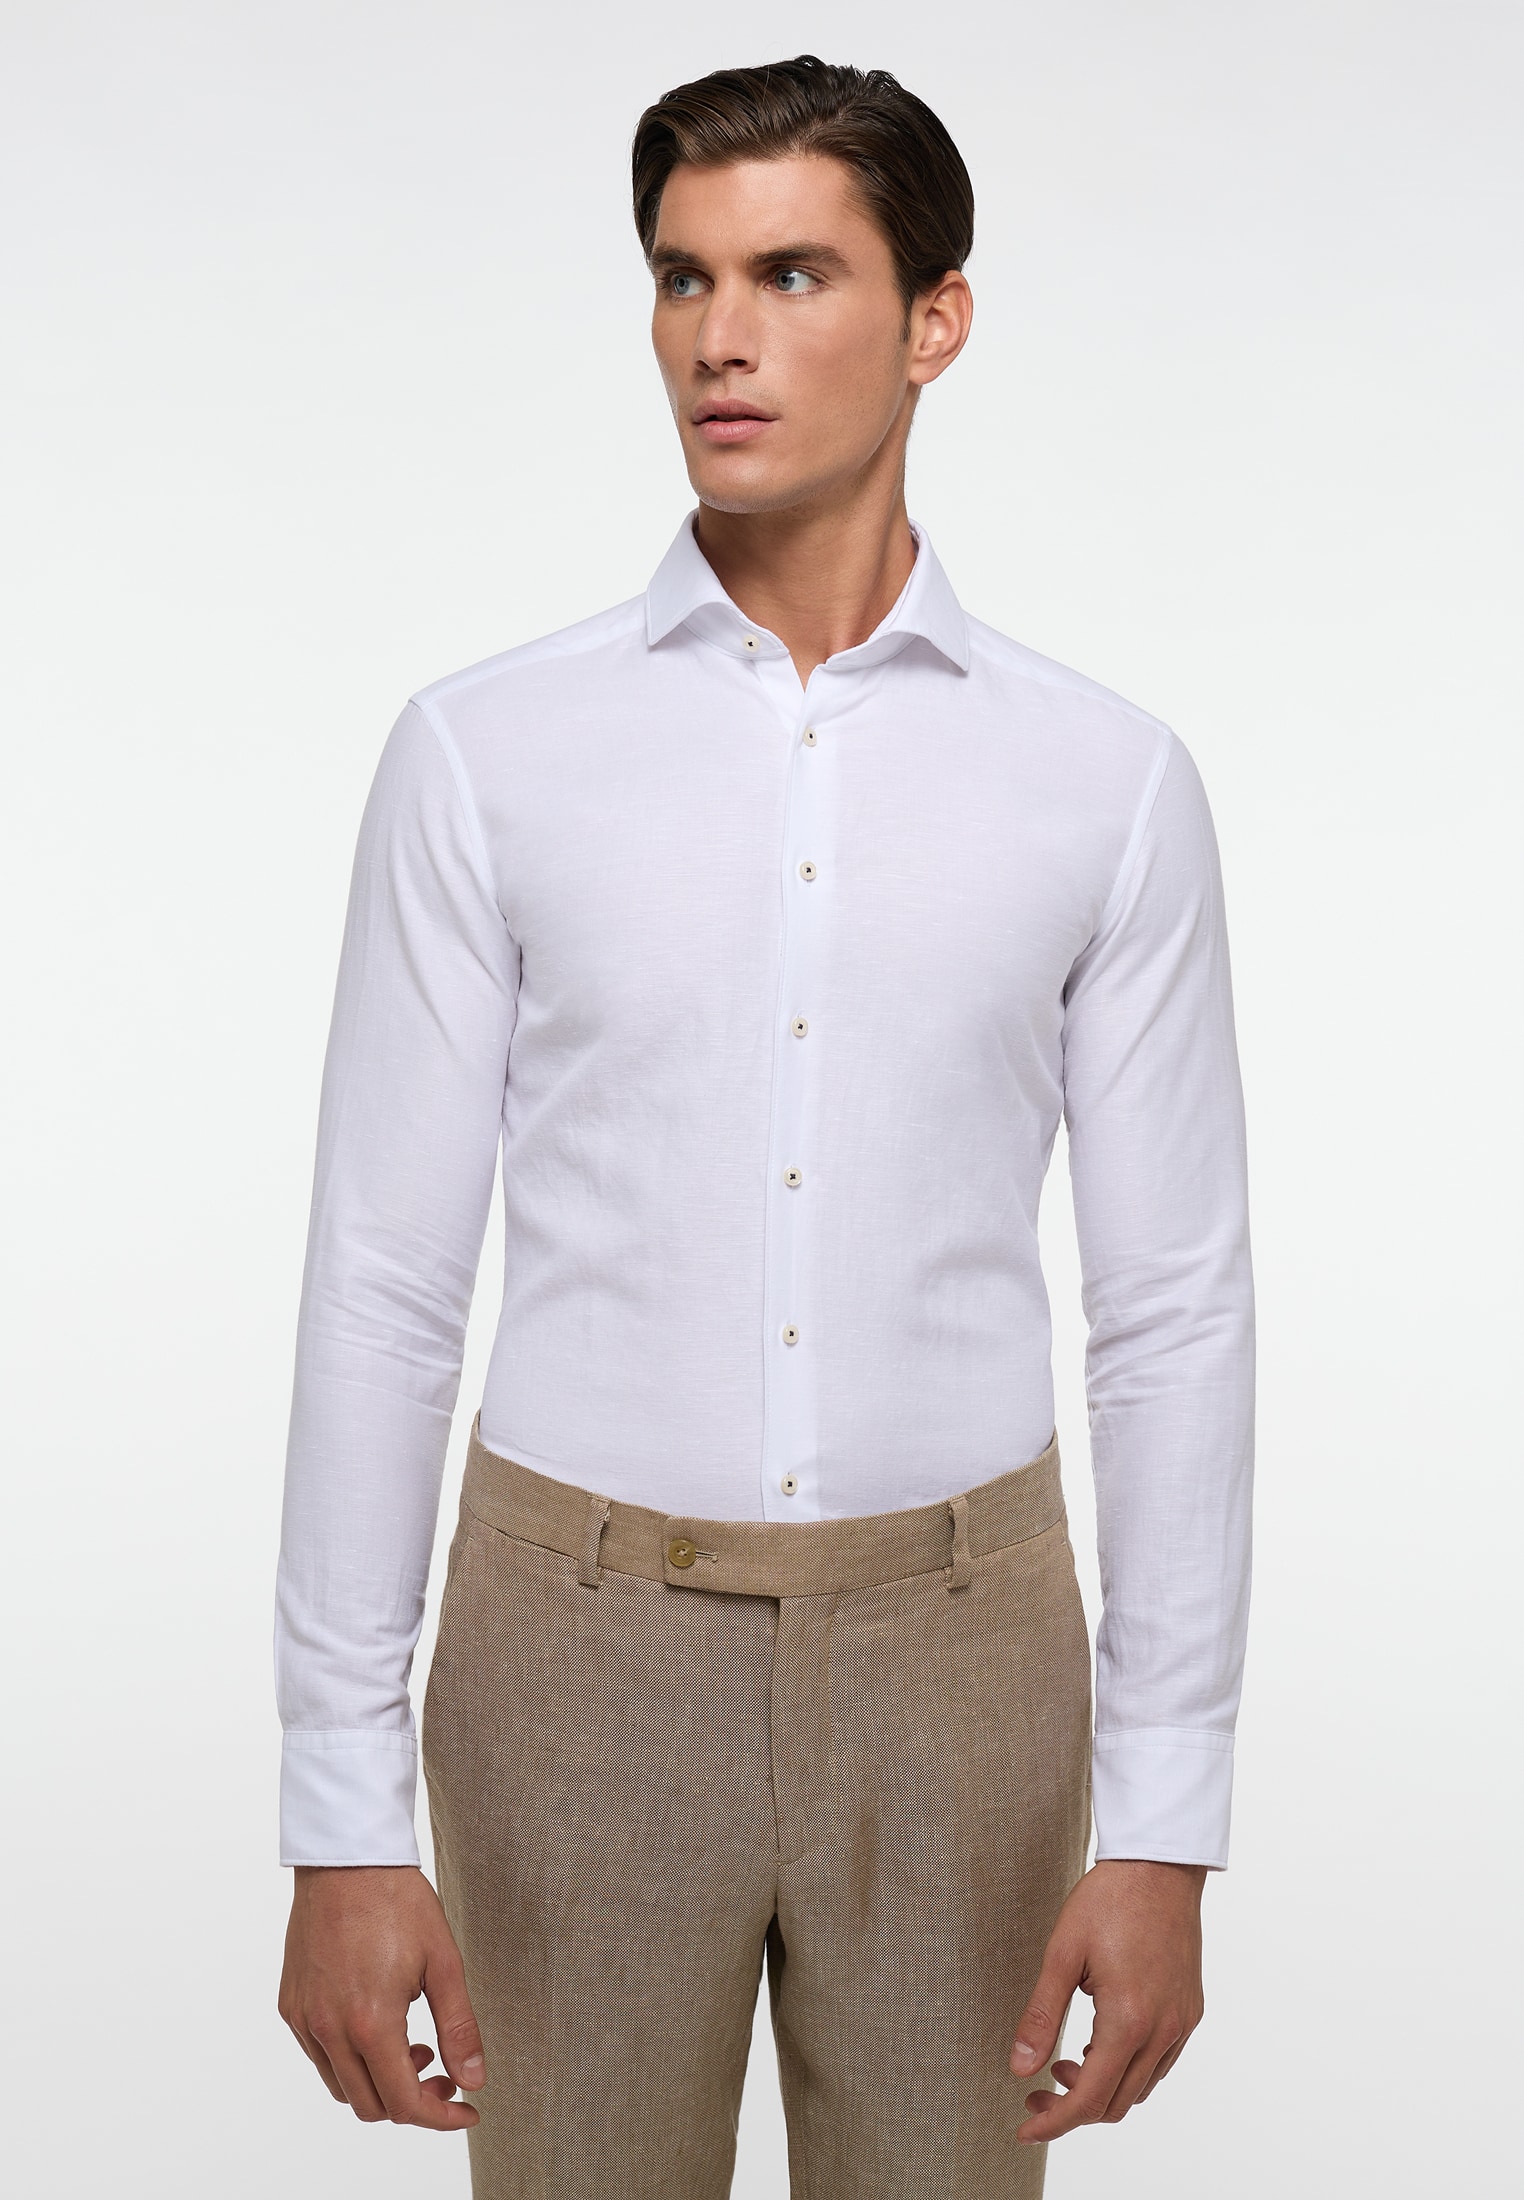 SLIM FIT Linen sleeve plain long Shirt 1SH00626-00-01-39-1/1 39 in | | | white white 